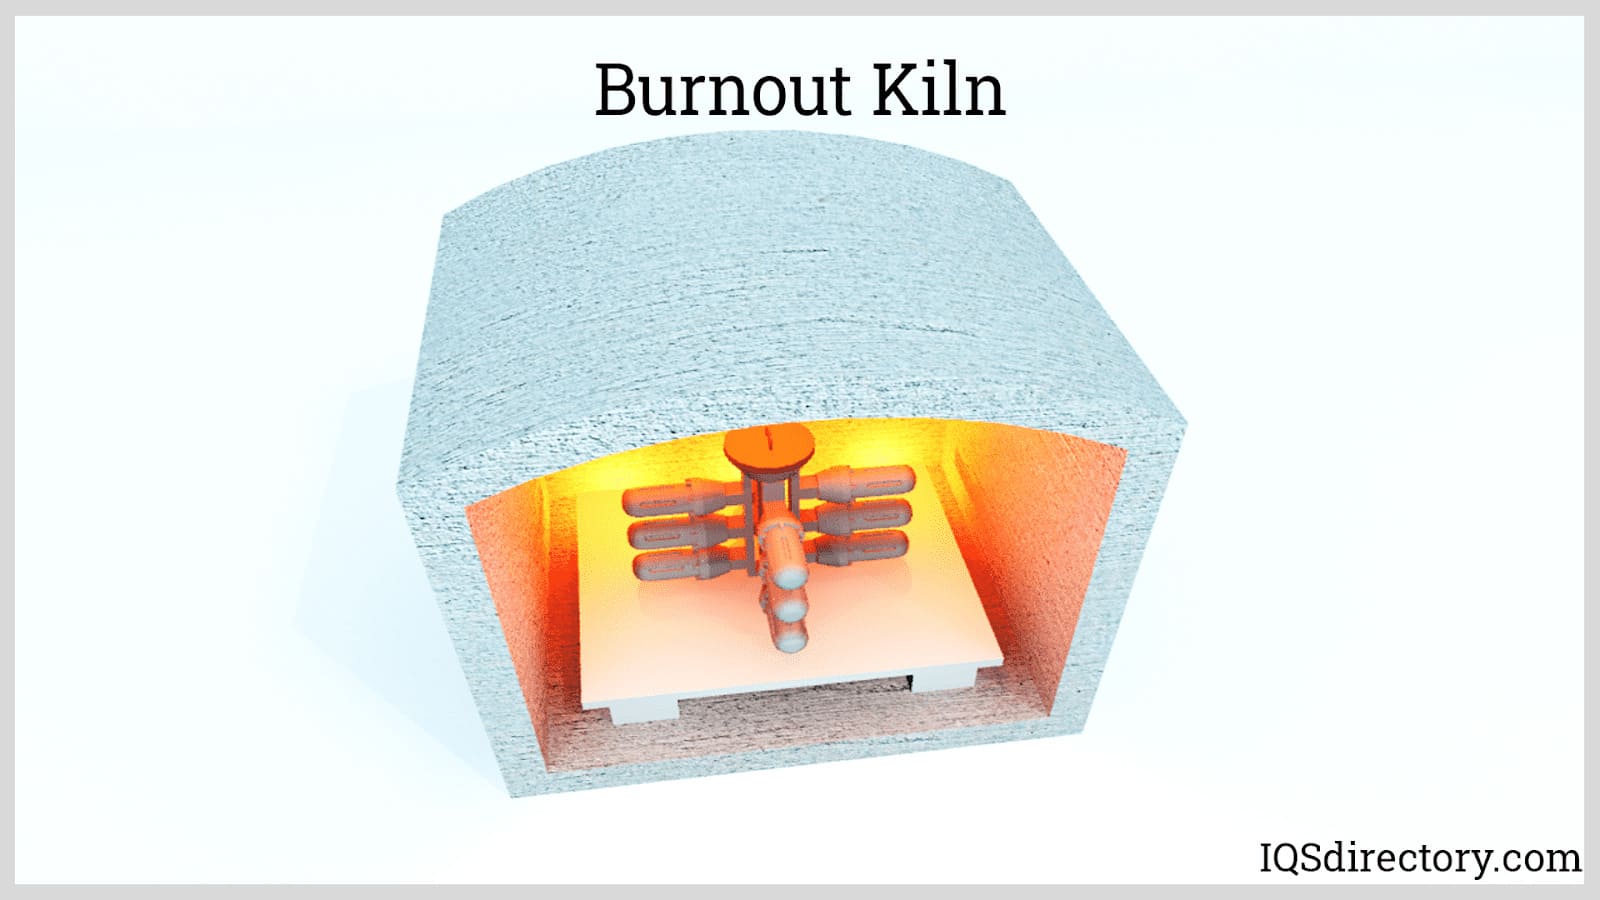 Burnout Kiln